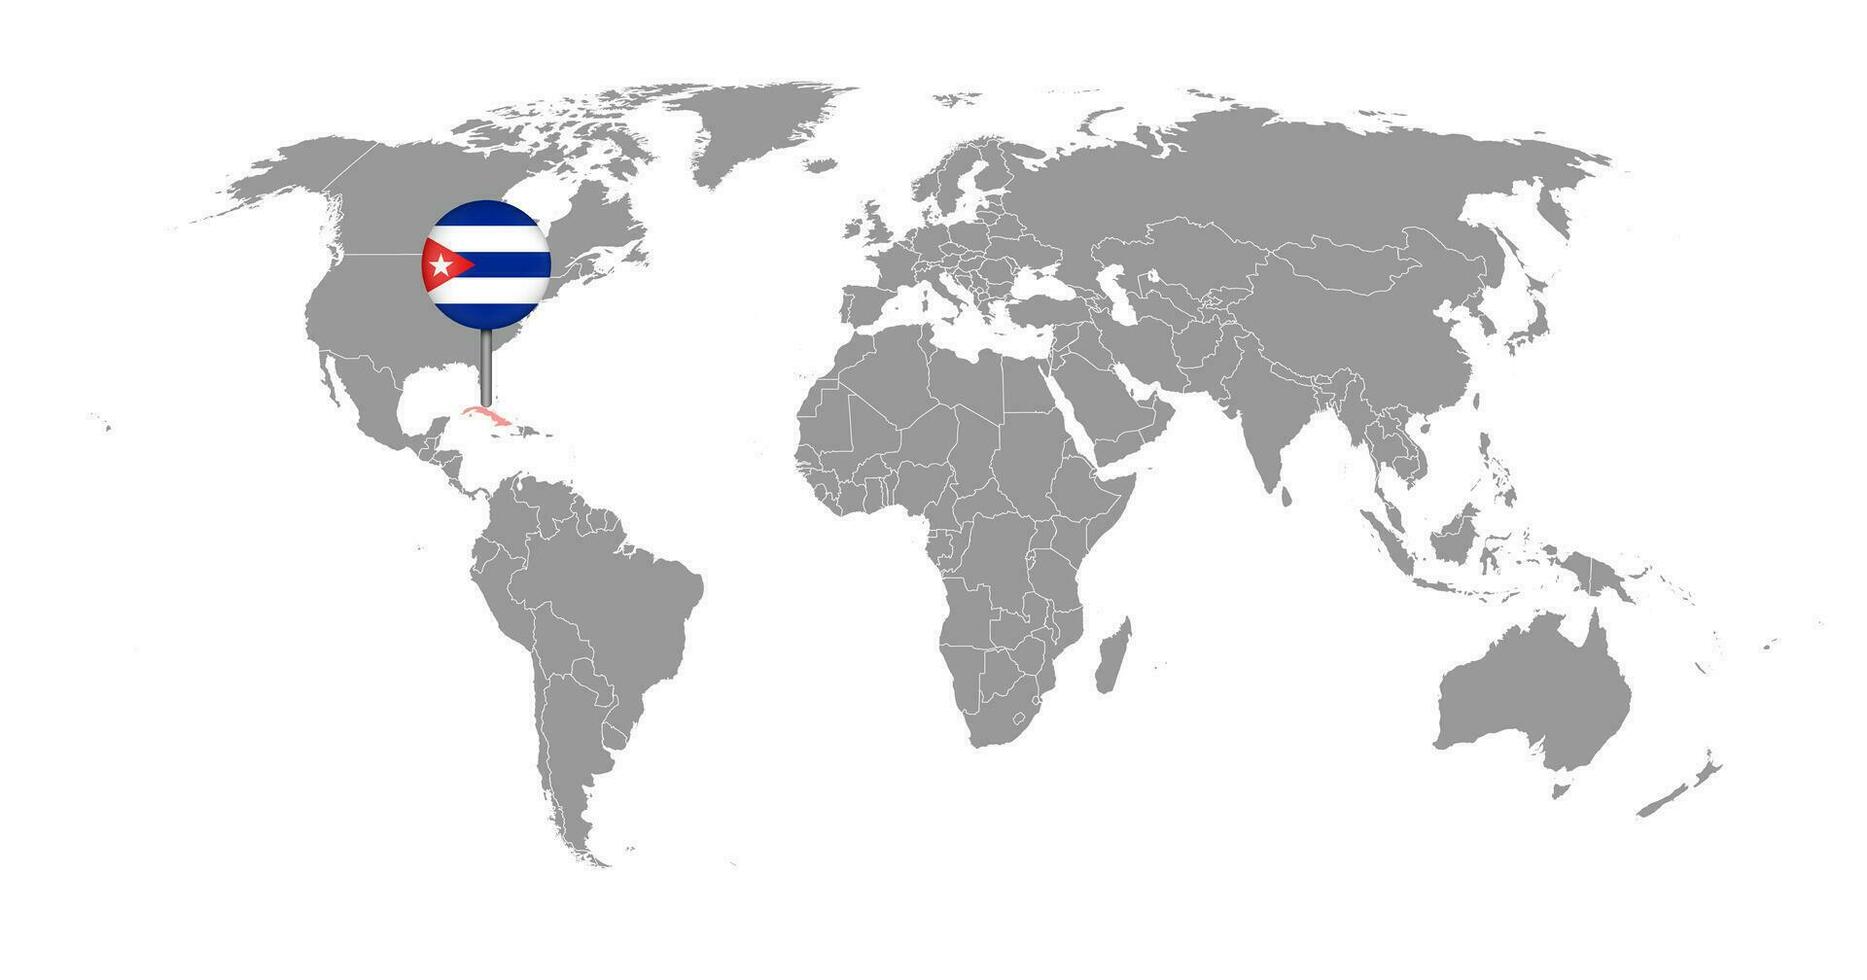 épinglez la carte avec le drapeau de cuba sur la carte du monde. illustration vectorielle. vecteur